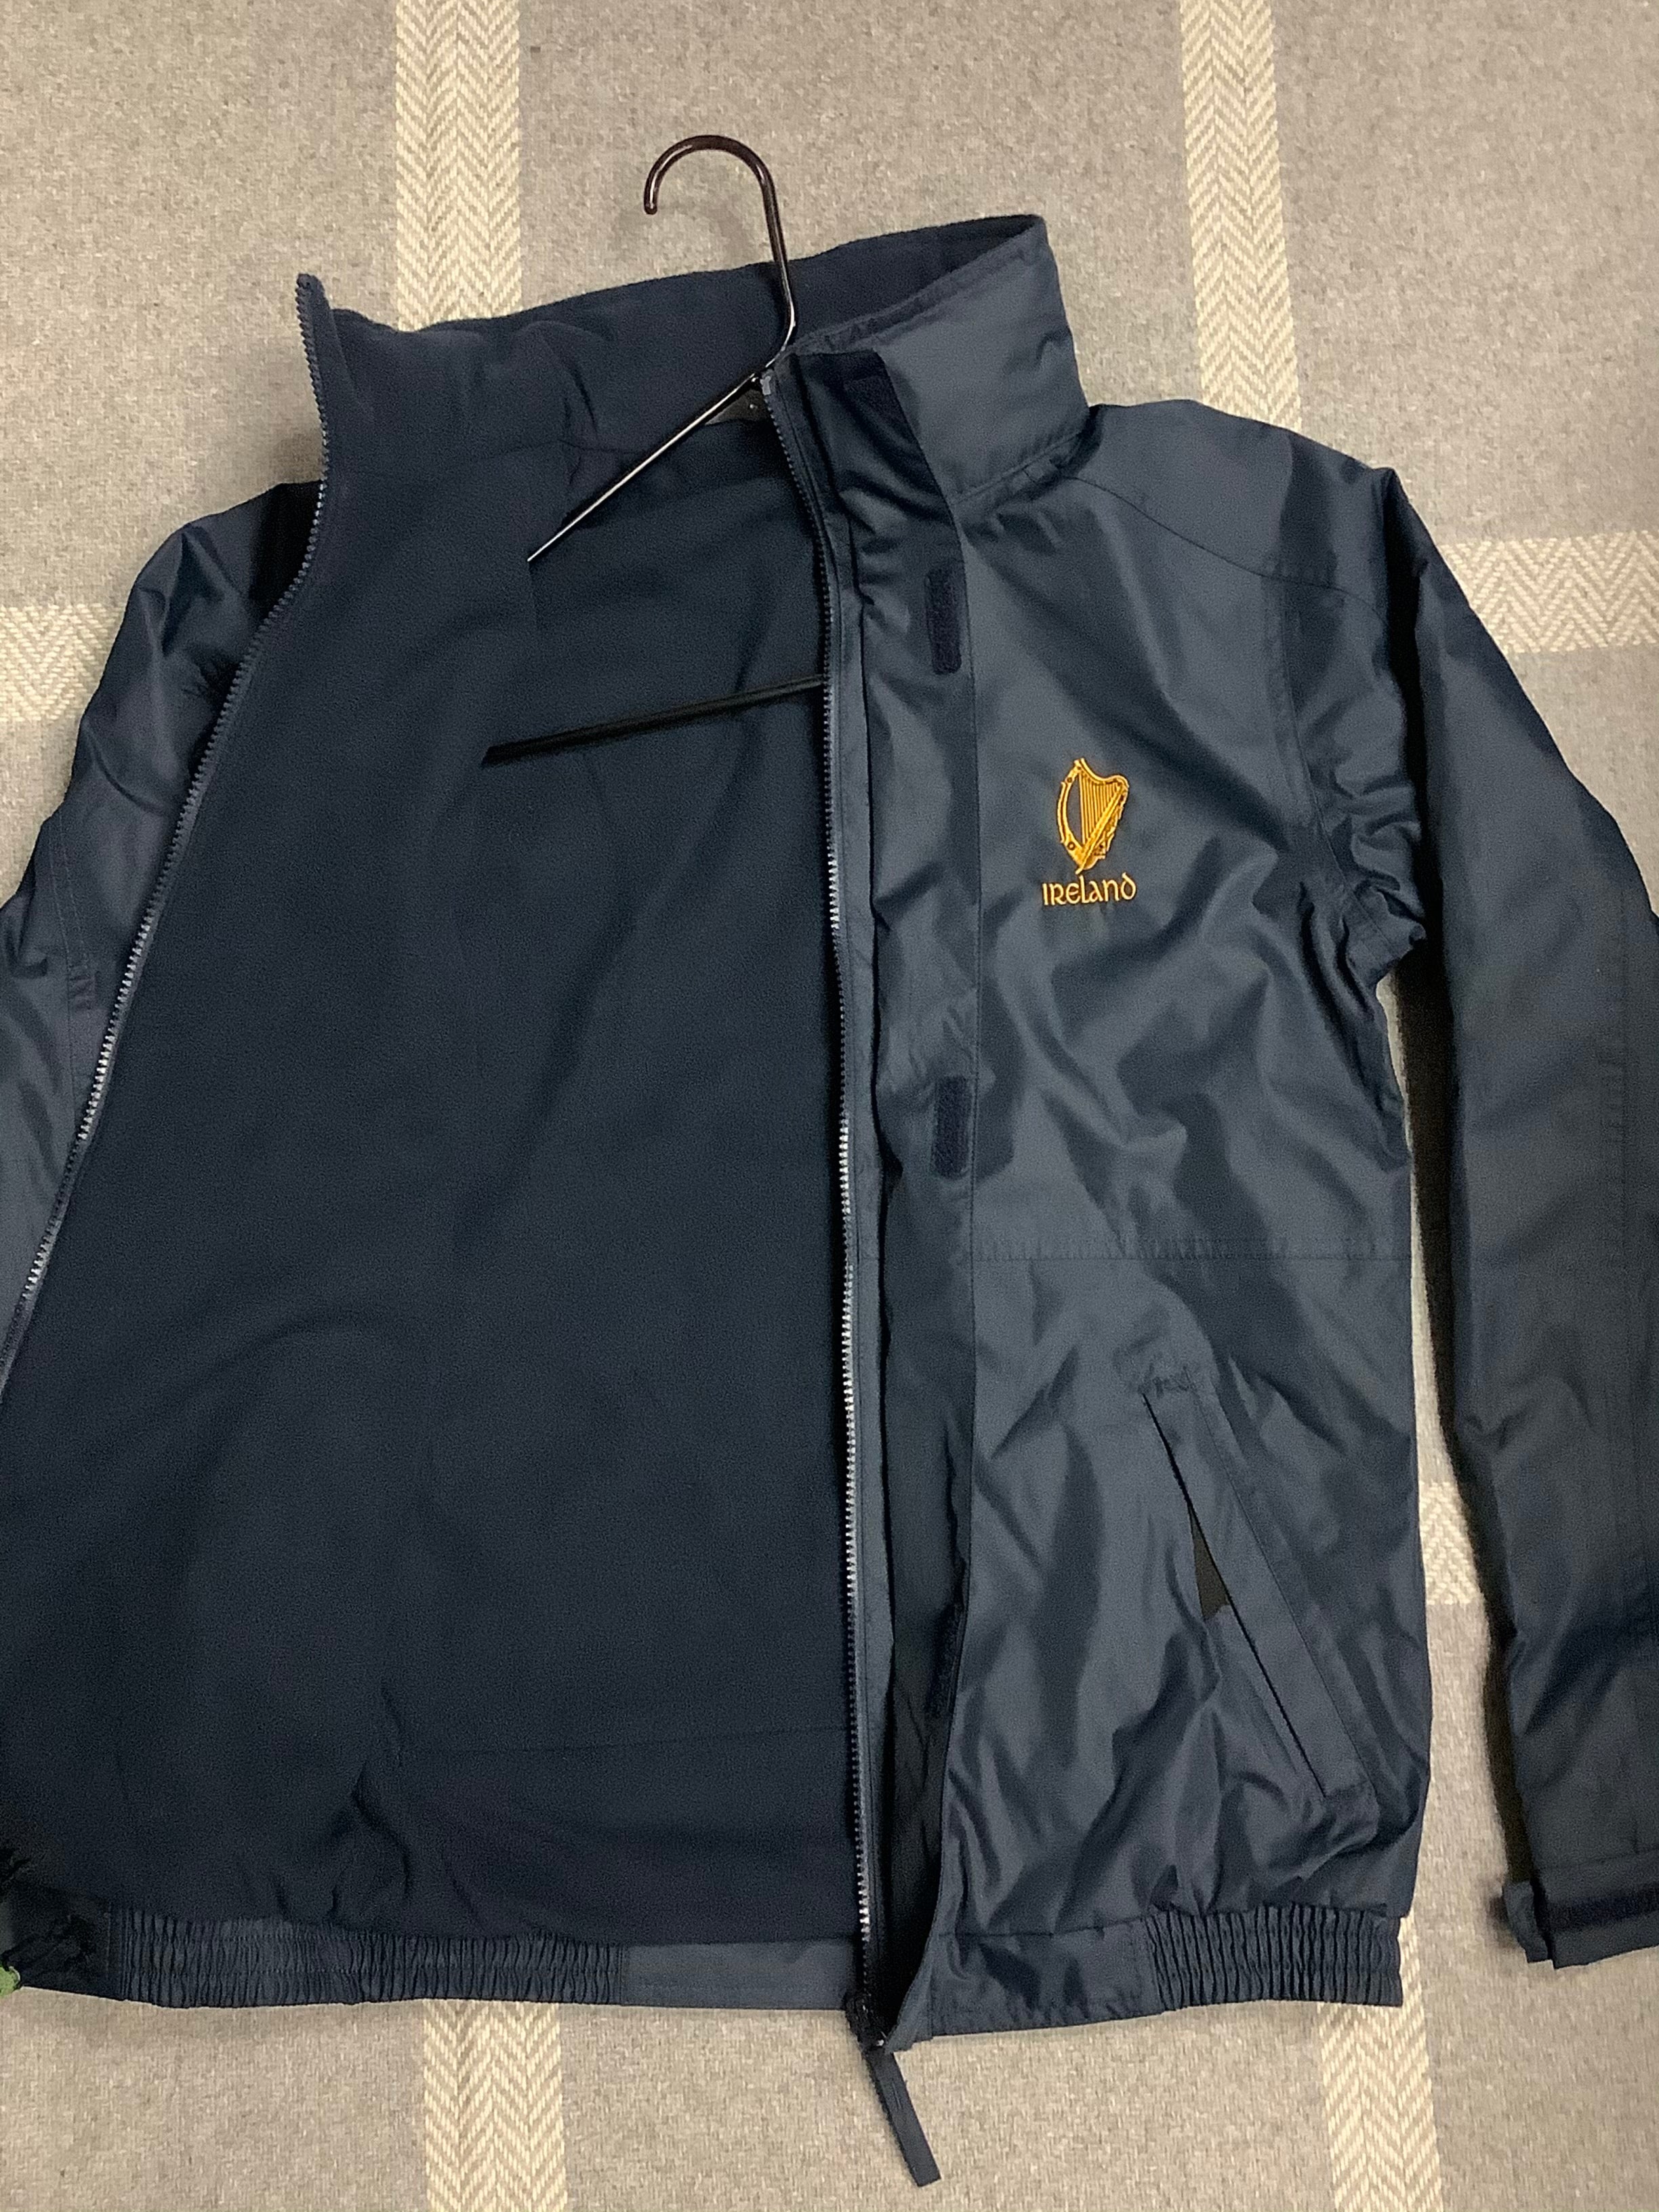 Men’s jacket TRW456 Dover navy